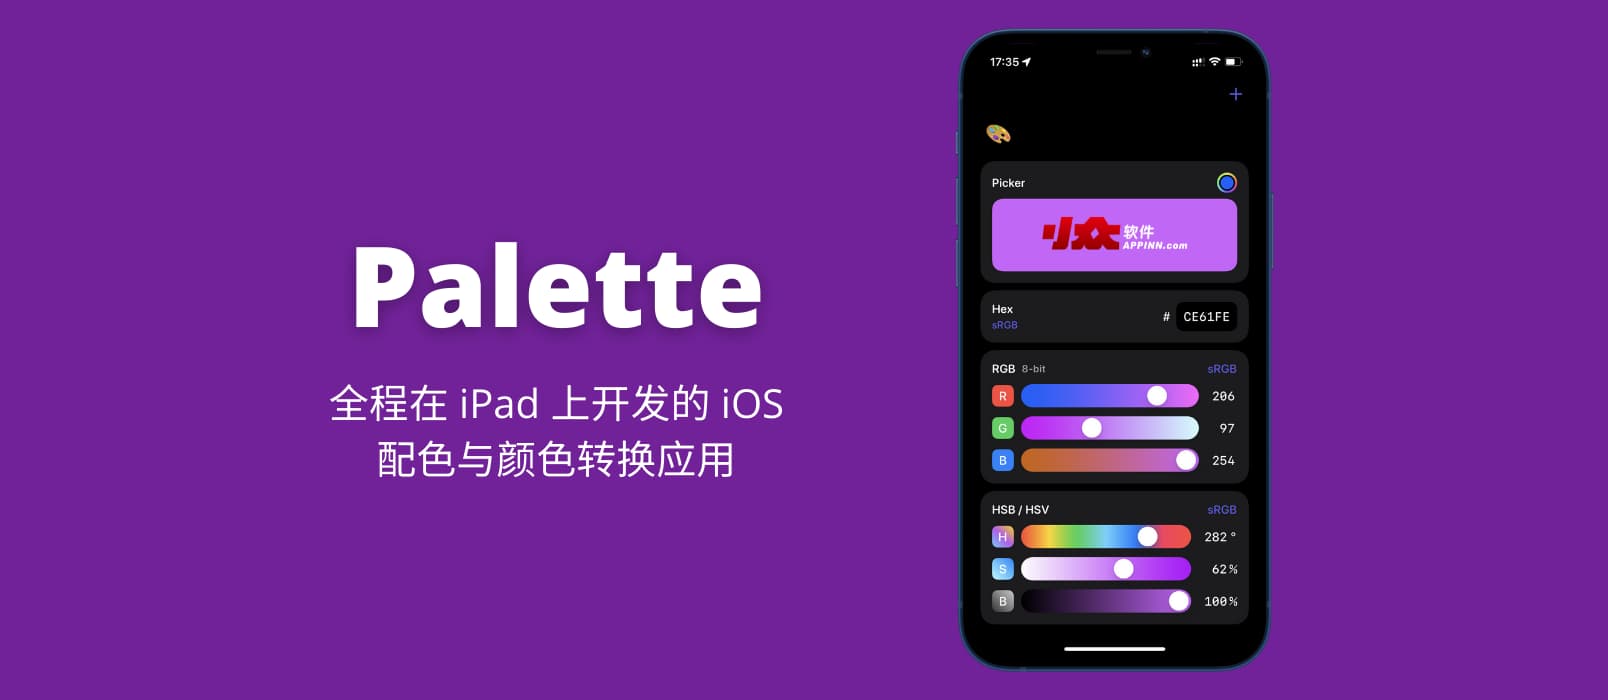 Palette - 全程在 iPad 上开发并上架 App Store 的 iOS 颜色转换应用 1